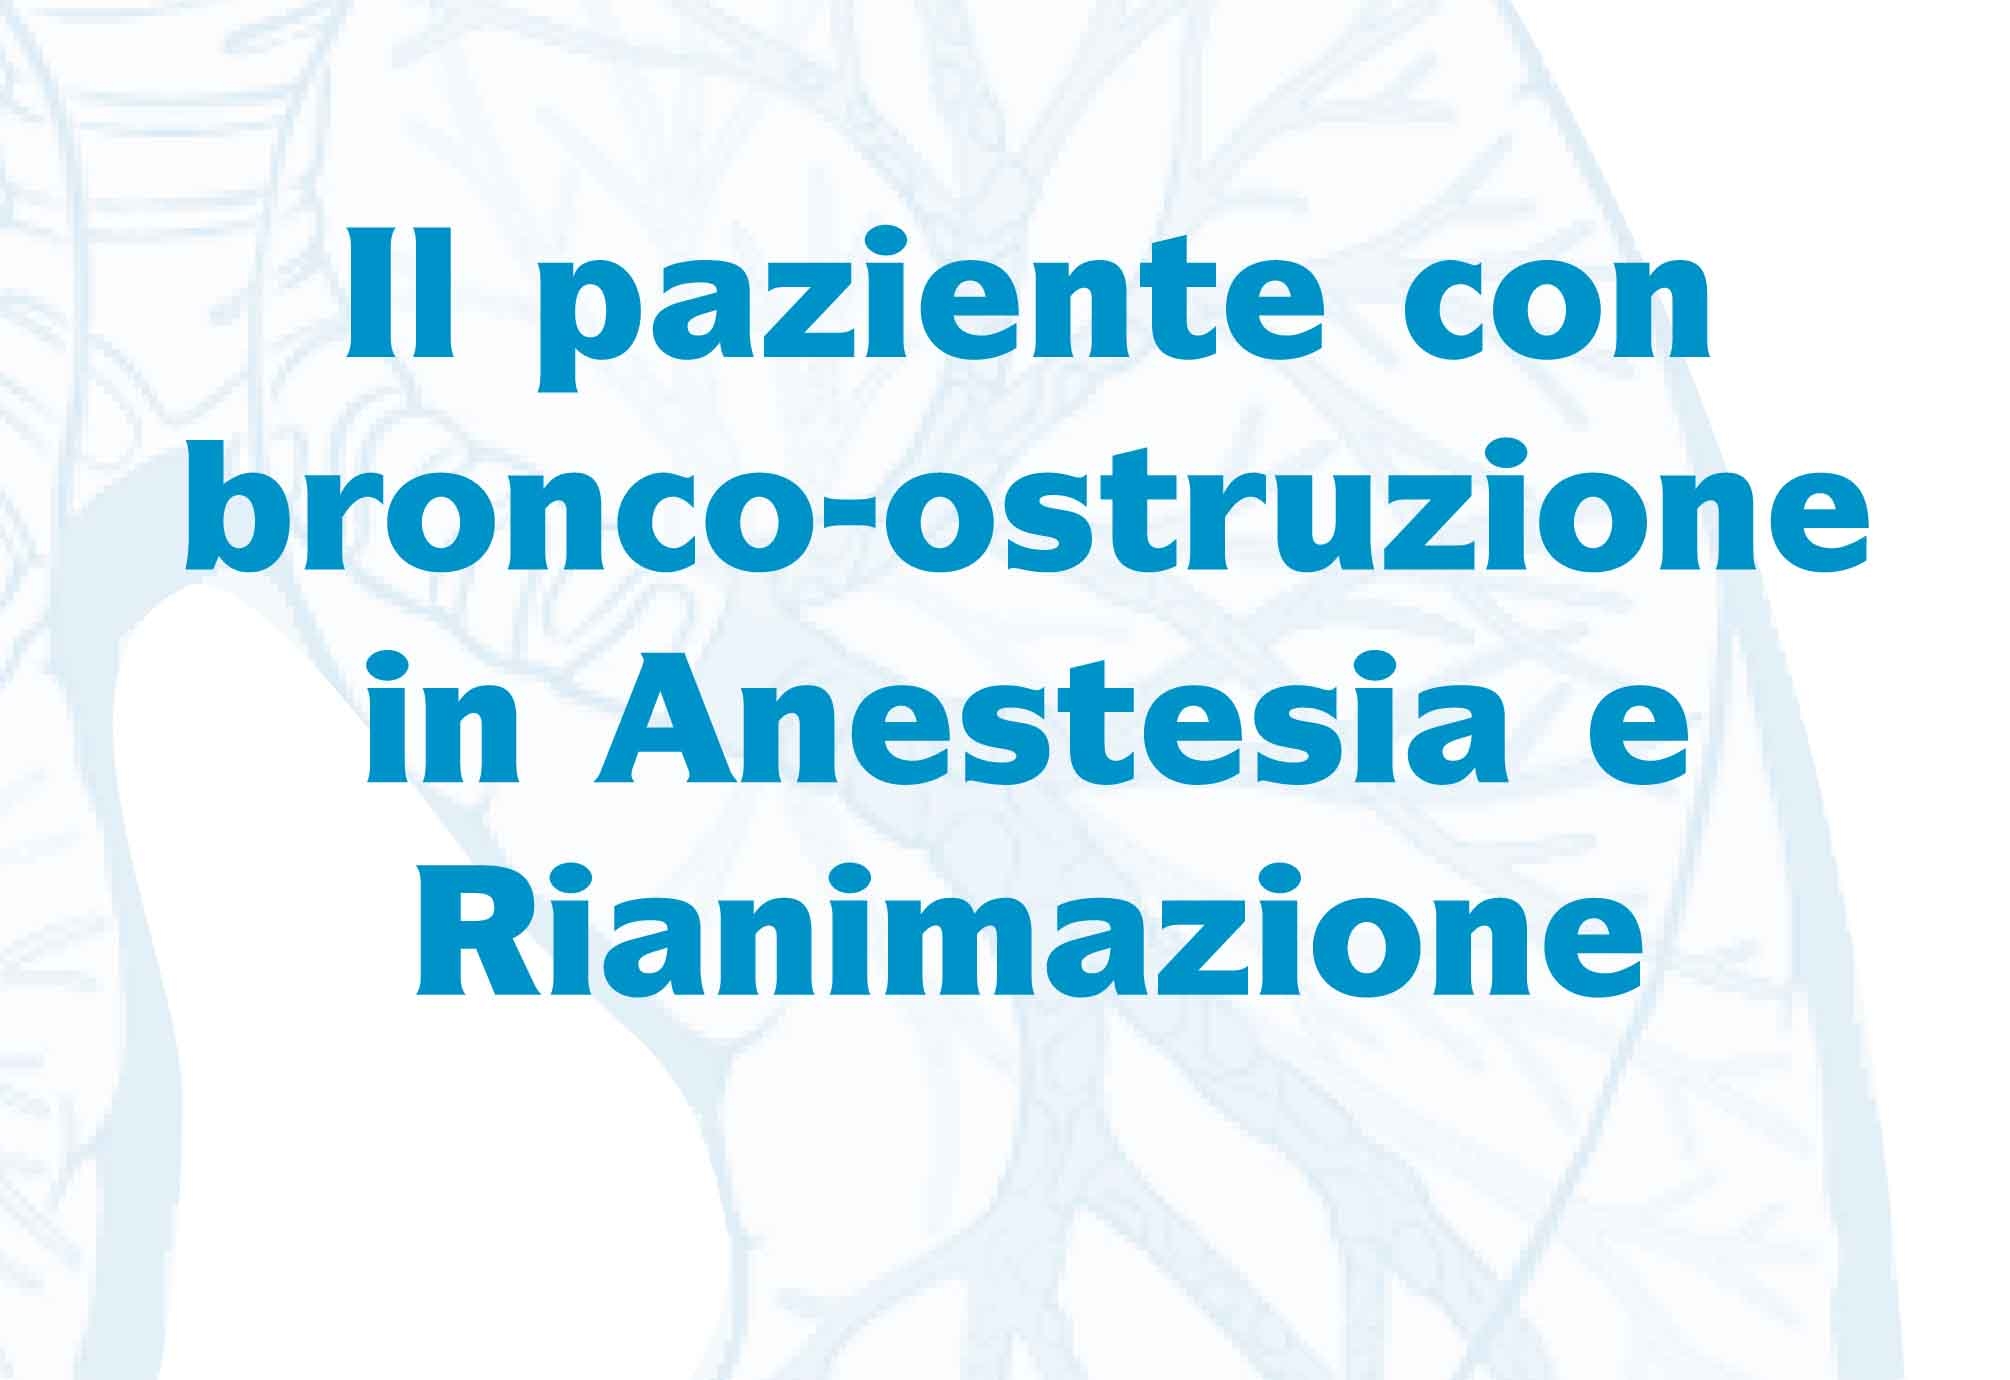 Il Paziente con Bronco-ostruzione in Anestesia e Rianimazione